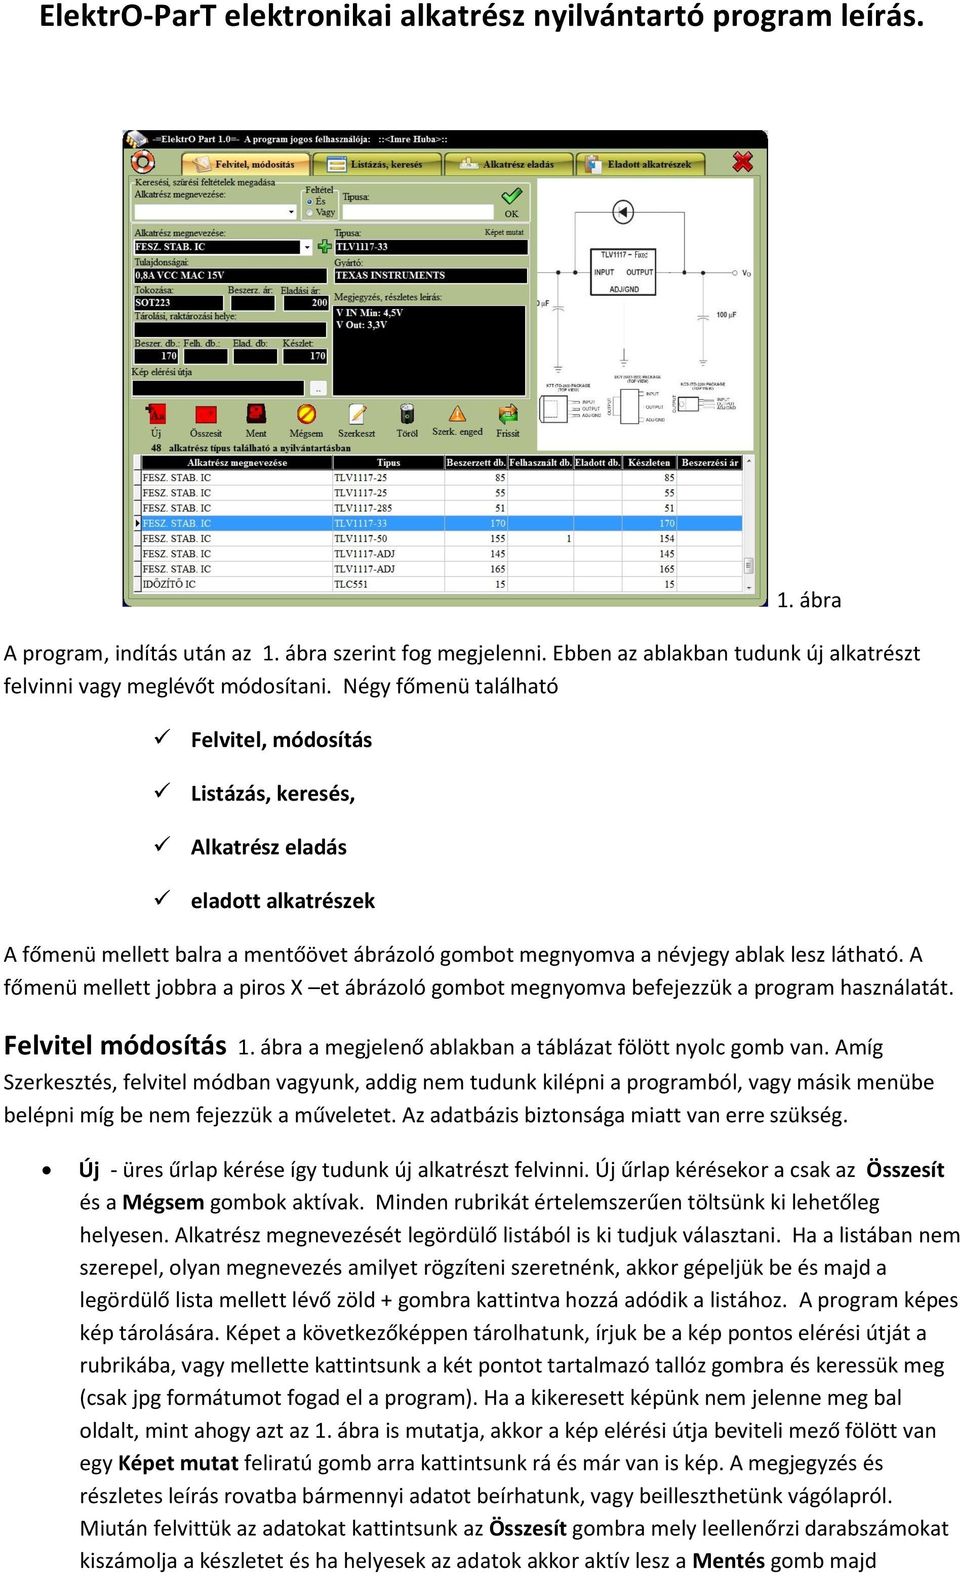 ElektrO-ParT elektronikai alkatrész nyilvántartó program leírás. - PDF  Ingyenes letöltés